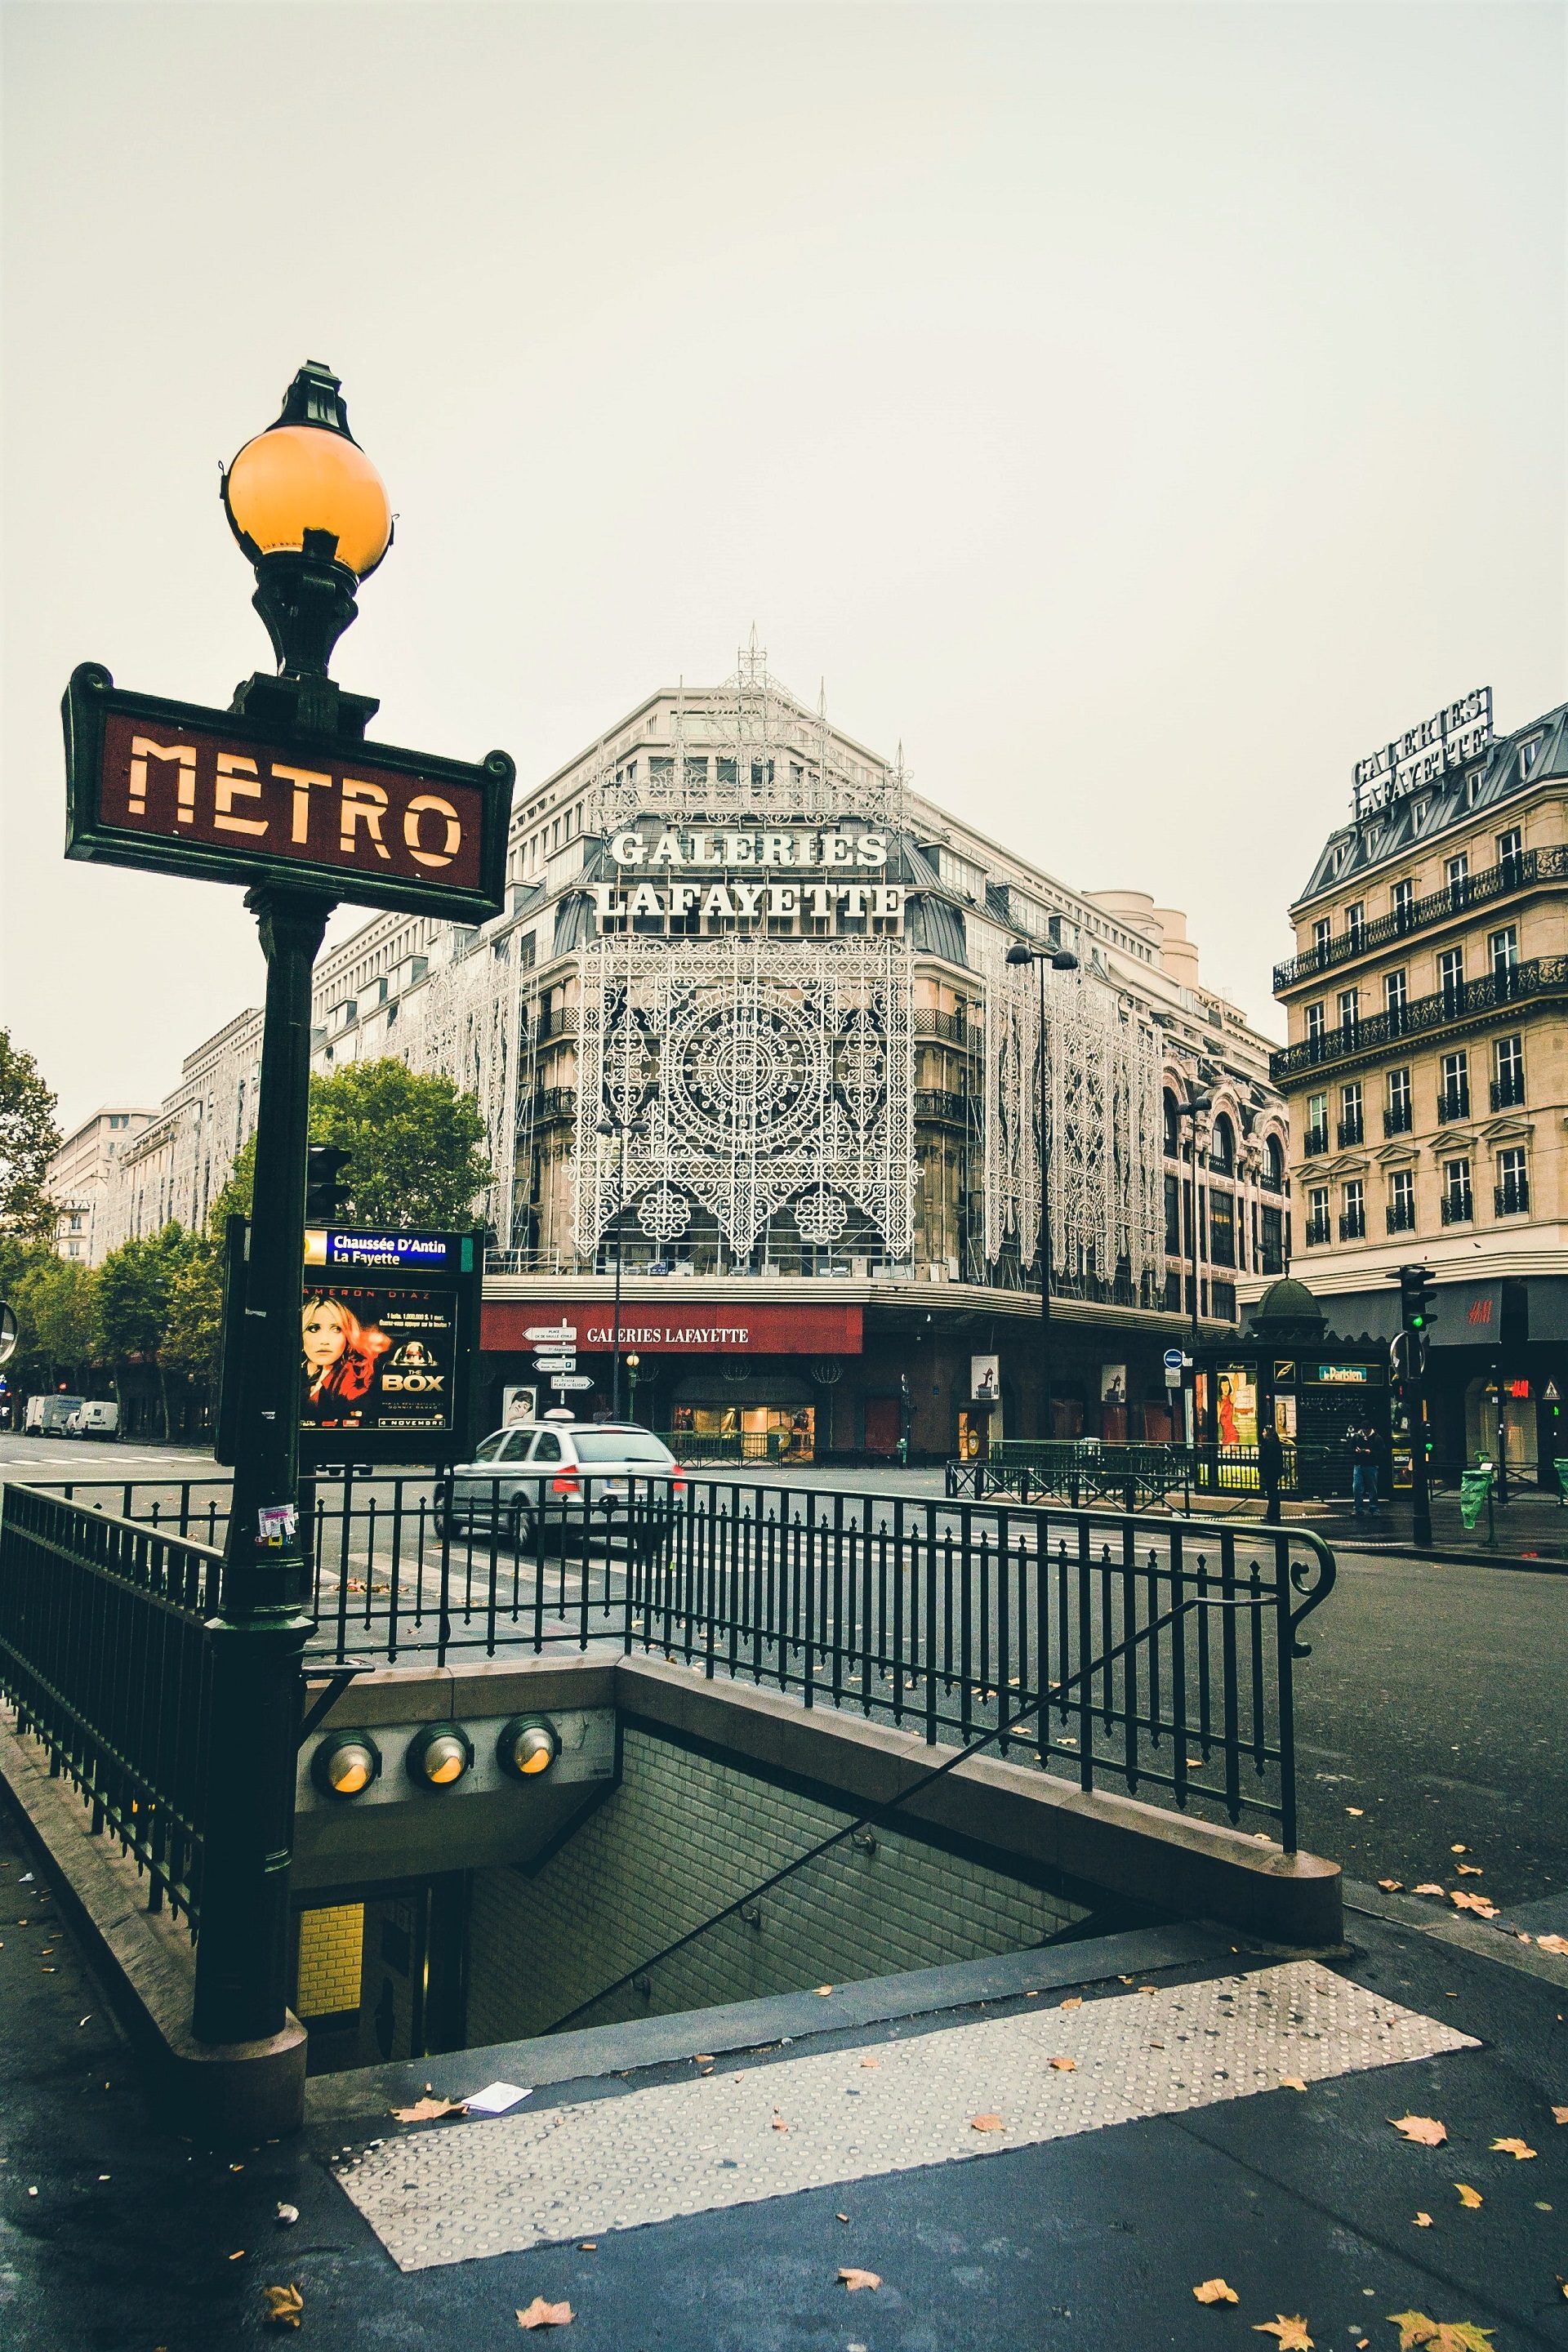 zabytkowa stacja metra w Paryżu i galerie lafayette centrum handlowe w stolicy Francji